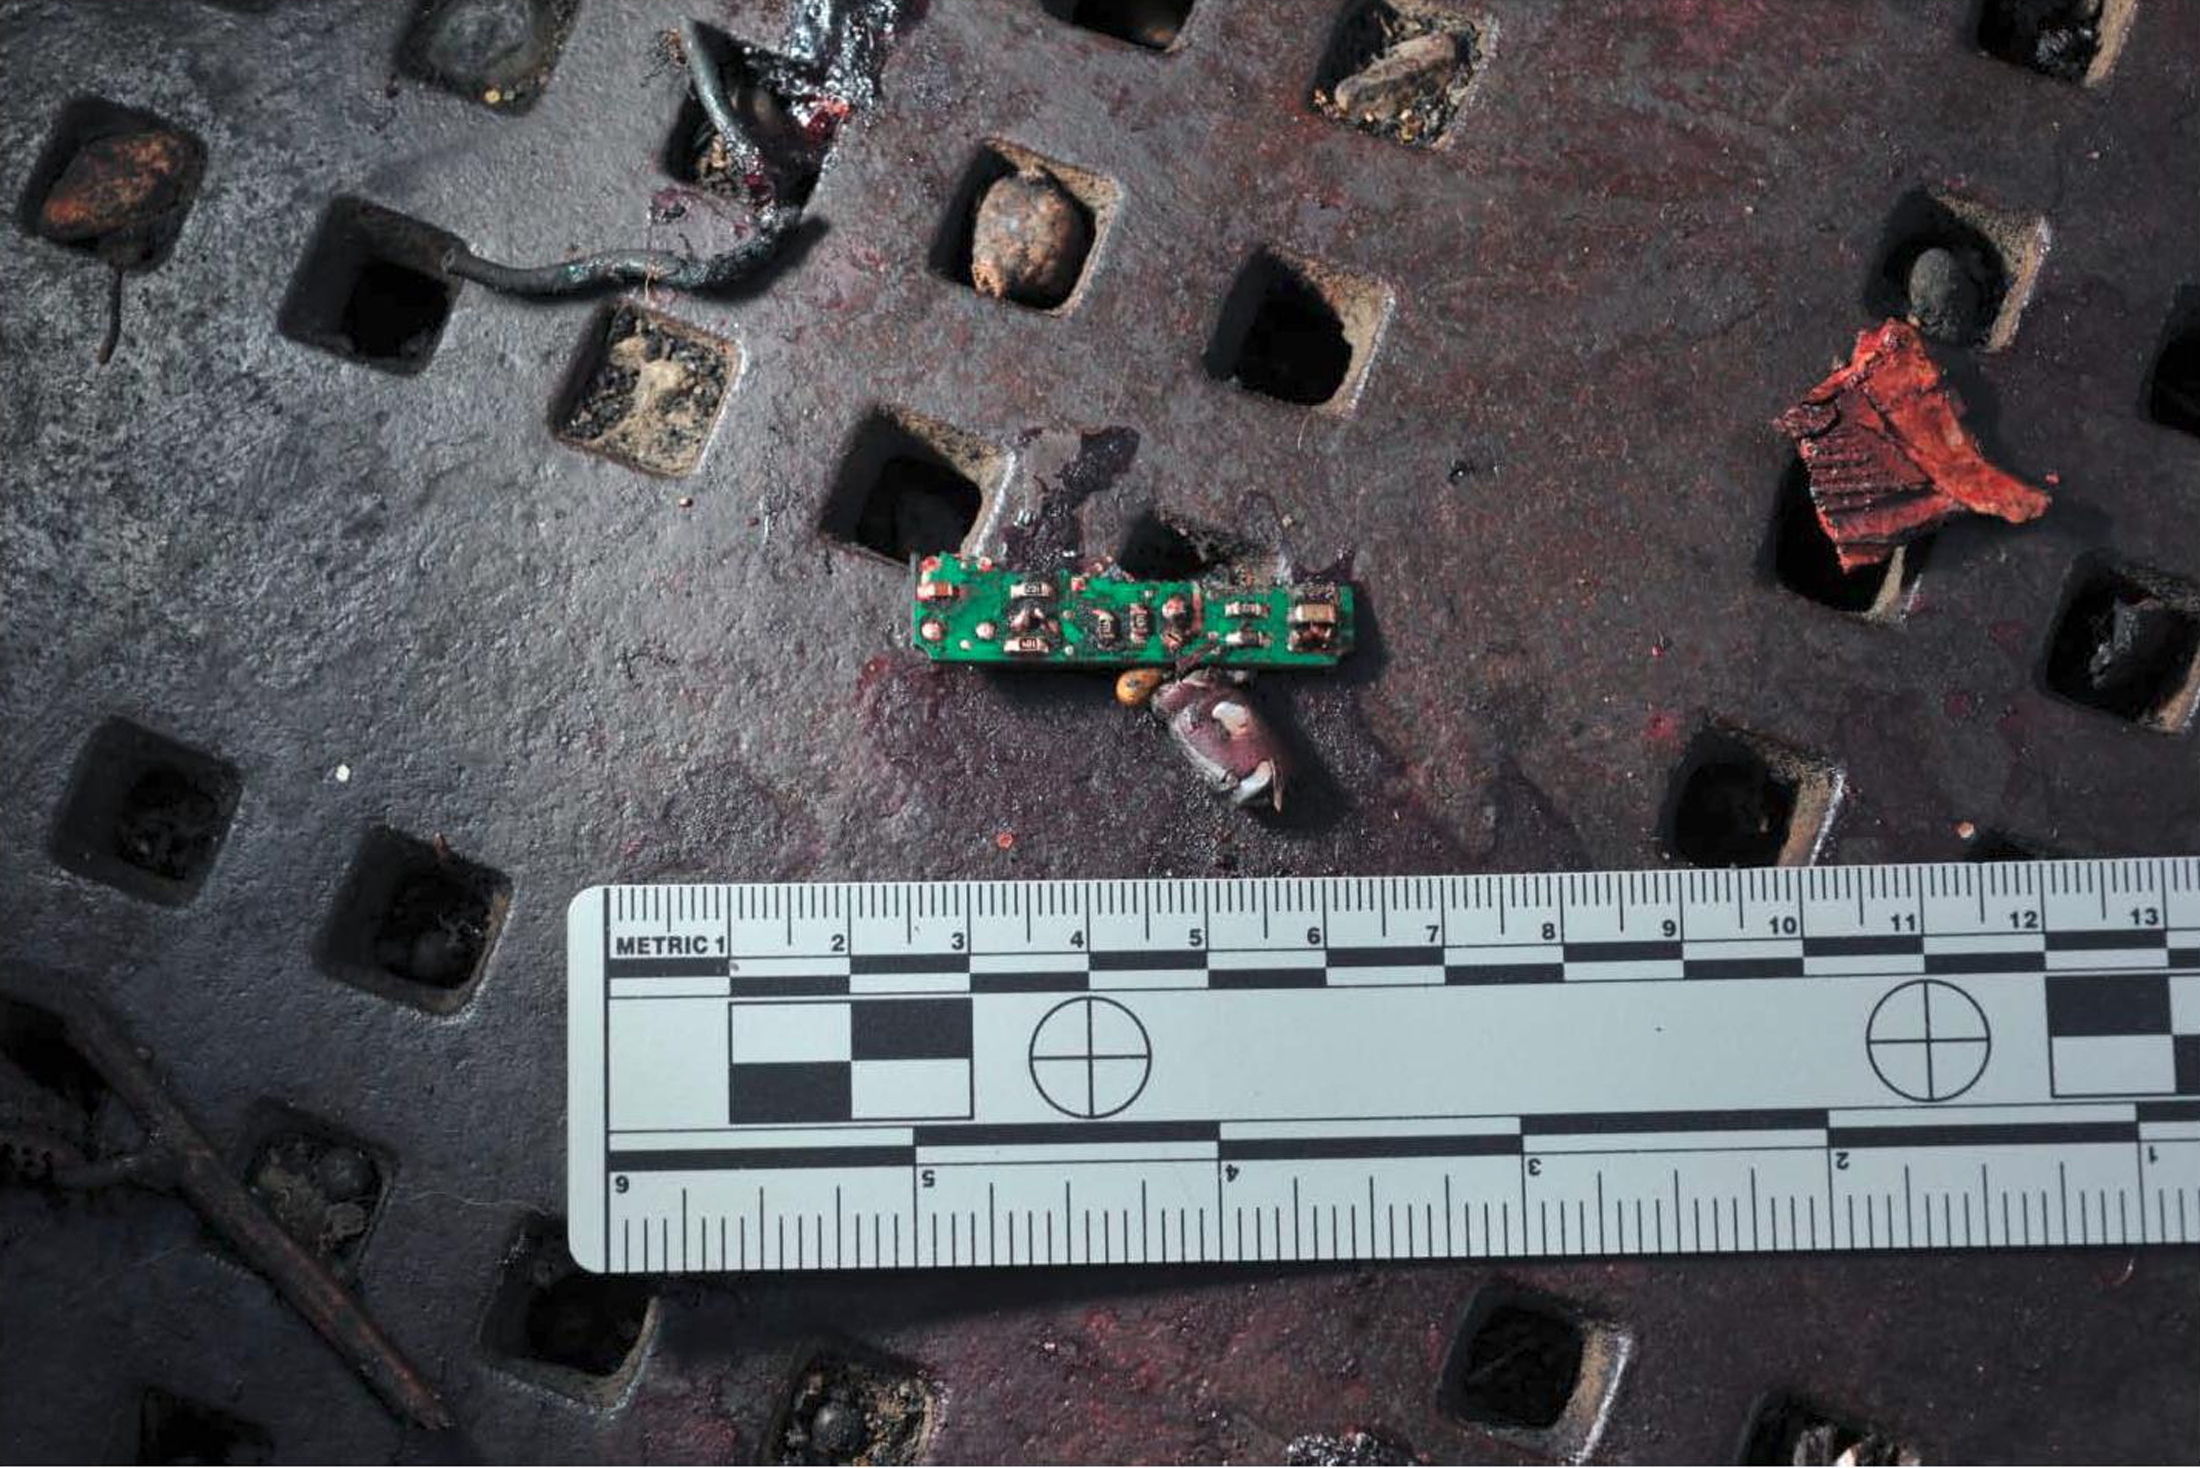 波士顿爆炸装满炸药压力锅是“元凶” 现场可疑者照片引热议